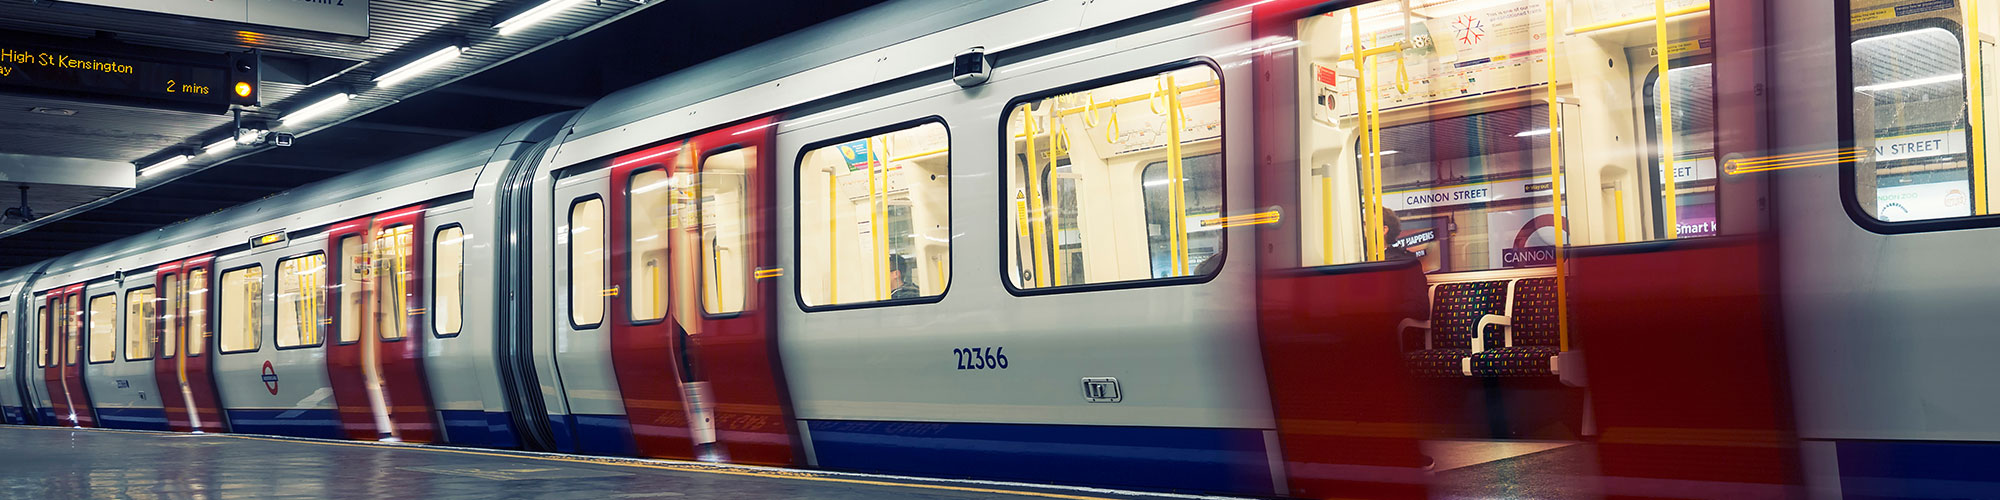 Tube - Transport for London